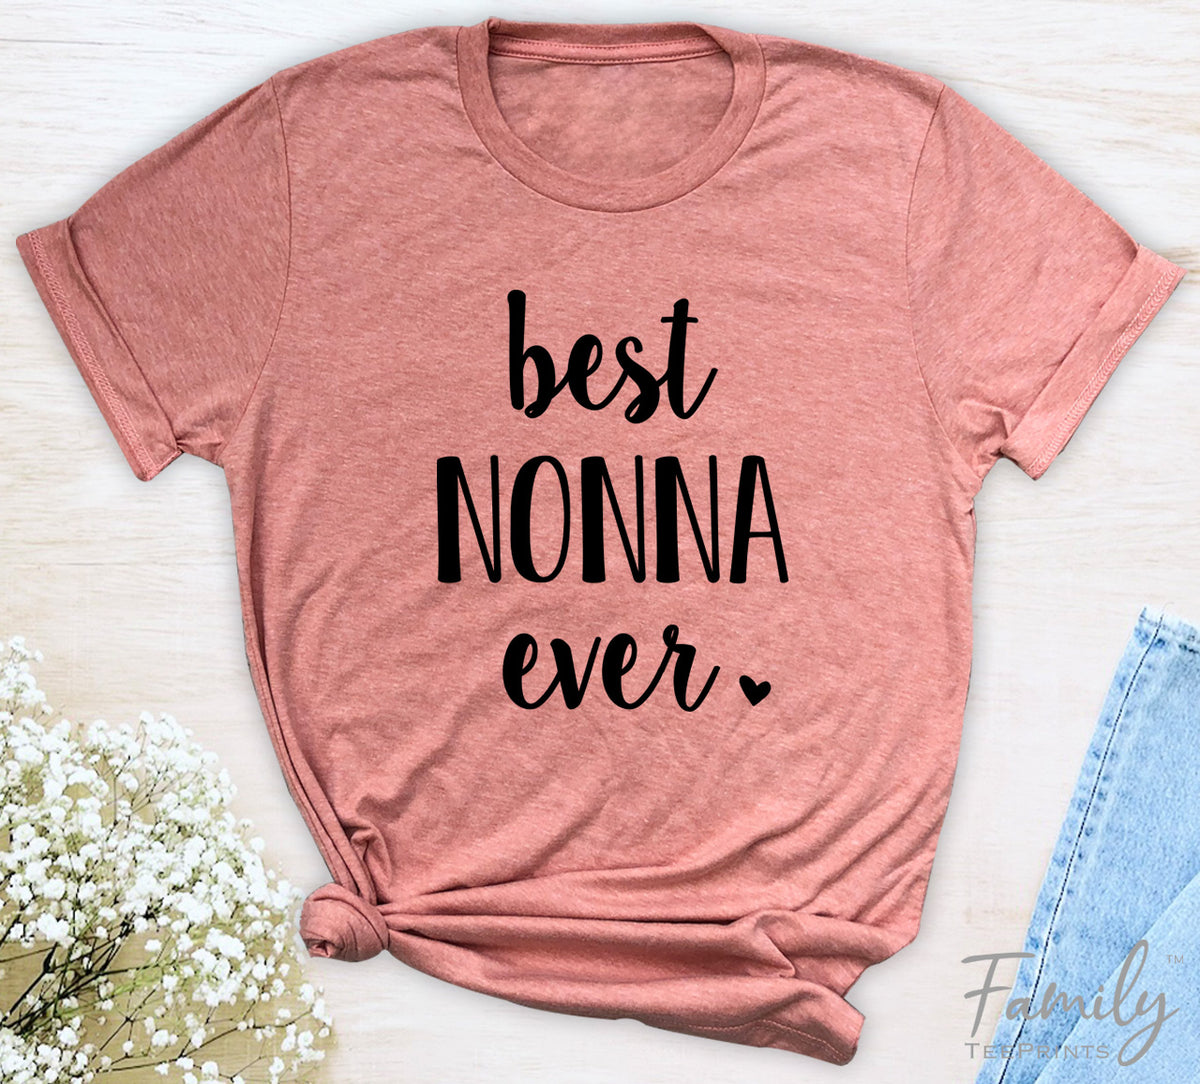 Best Nonna Ever - Unisex T-shirt - Nonna Shirt - Gift For New Nonna - familyteeprints